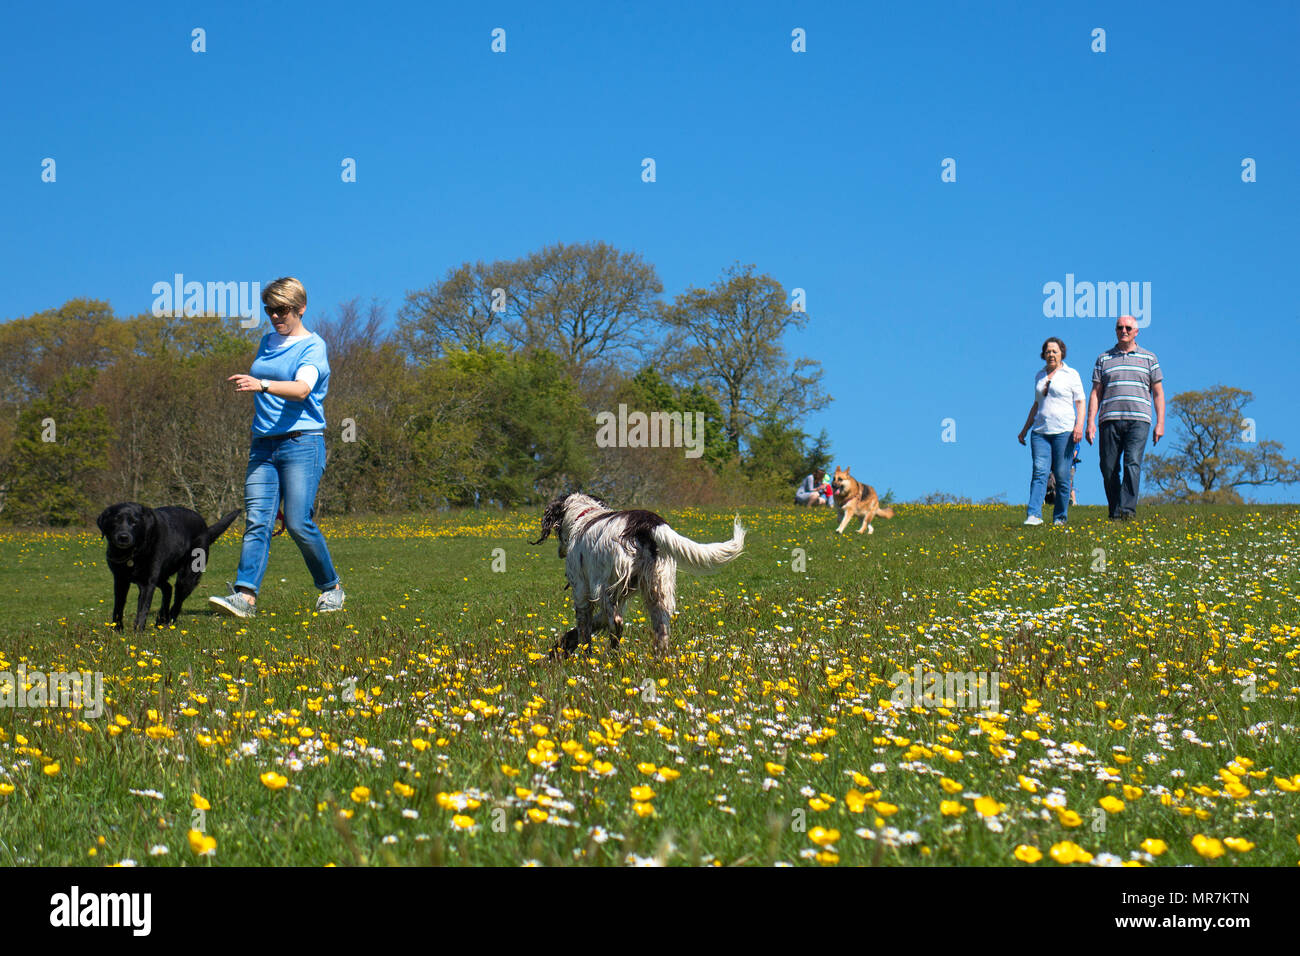 Les gens walking dogs park journée de printemps ensoleillée, Cornwall, Angleterre, Grande-Bretagne, Royaume-Uni. Banque D'Images